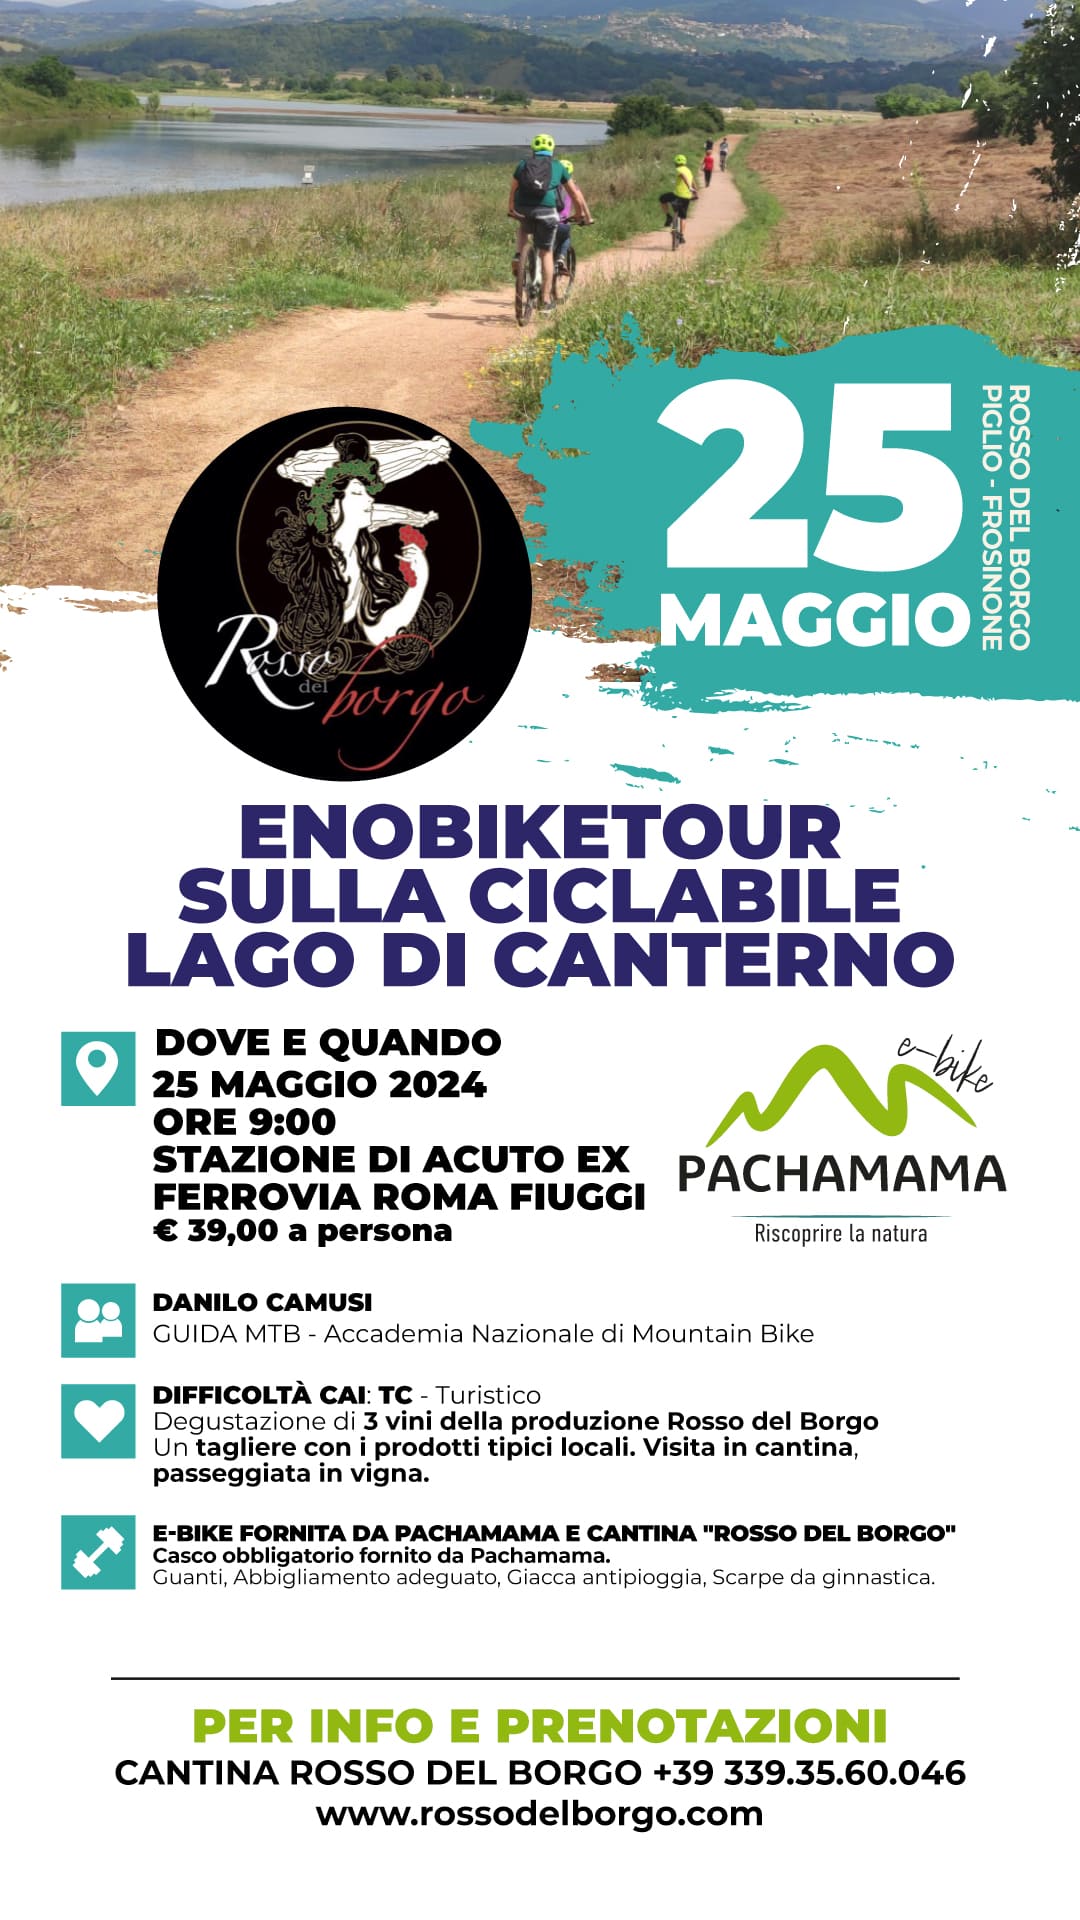 https://www.pachamama-adventure.it/immagini_news/70/eno-bike-tour-sulla-ciclabile-lago-di-canterno-25-maggio-2024-70.jpg